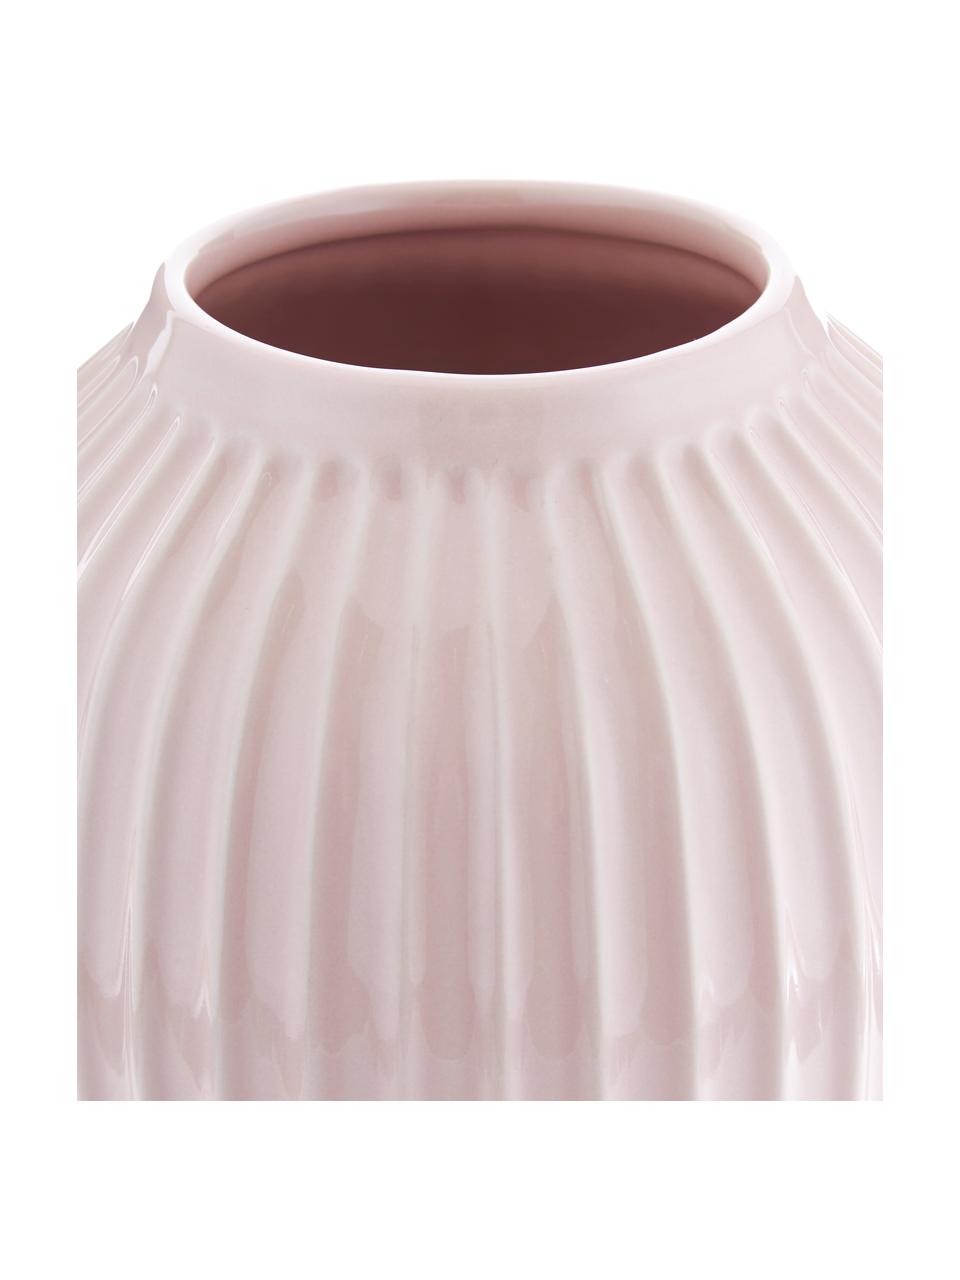 Ručně vyrobená designová váza Hammershøi, Porcelán, Růžová, Ø 20 cm